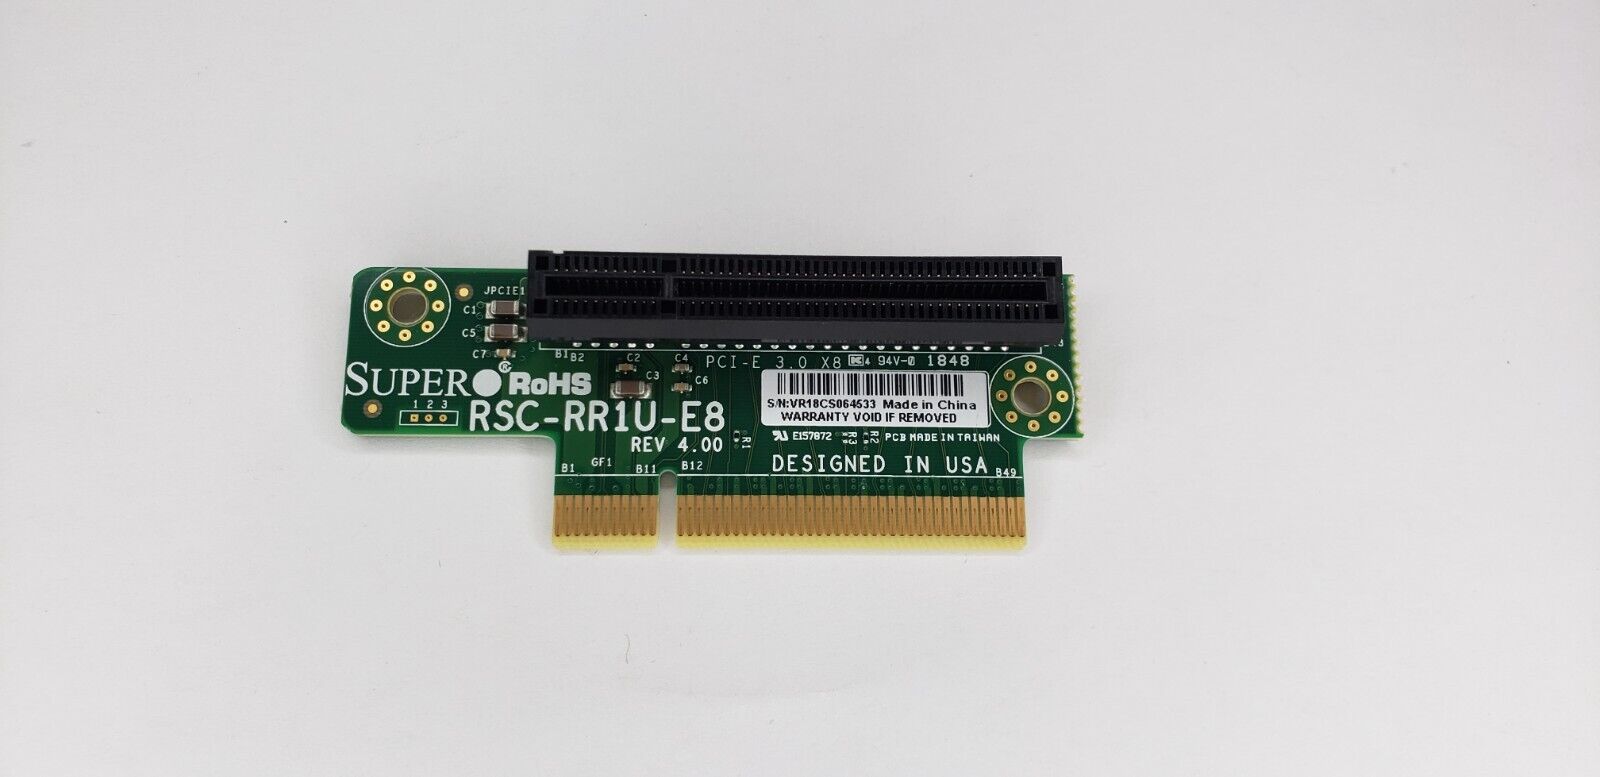 RSC-RR1U-E8 Supermicro 1U PCI-E x8 Riser Card Board